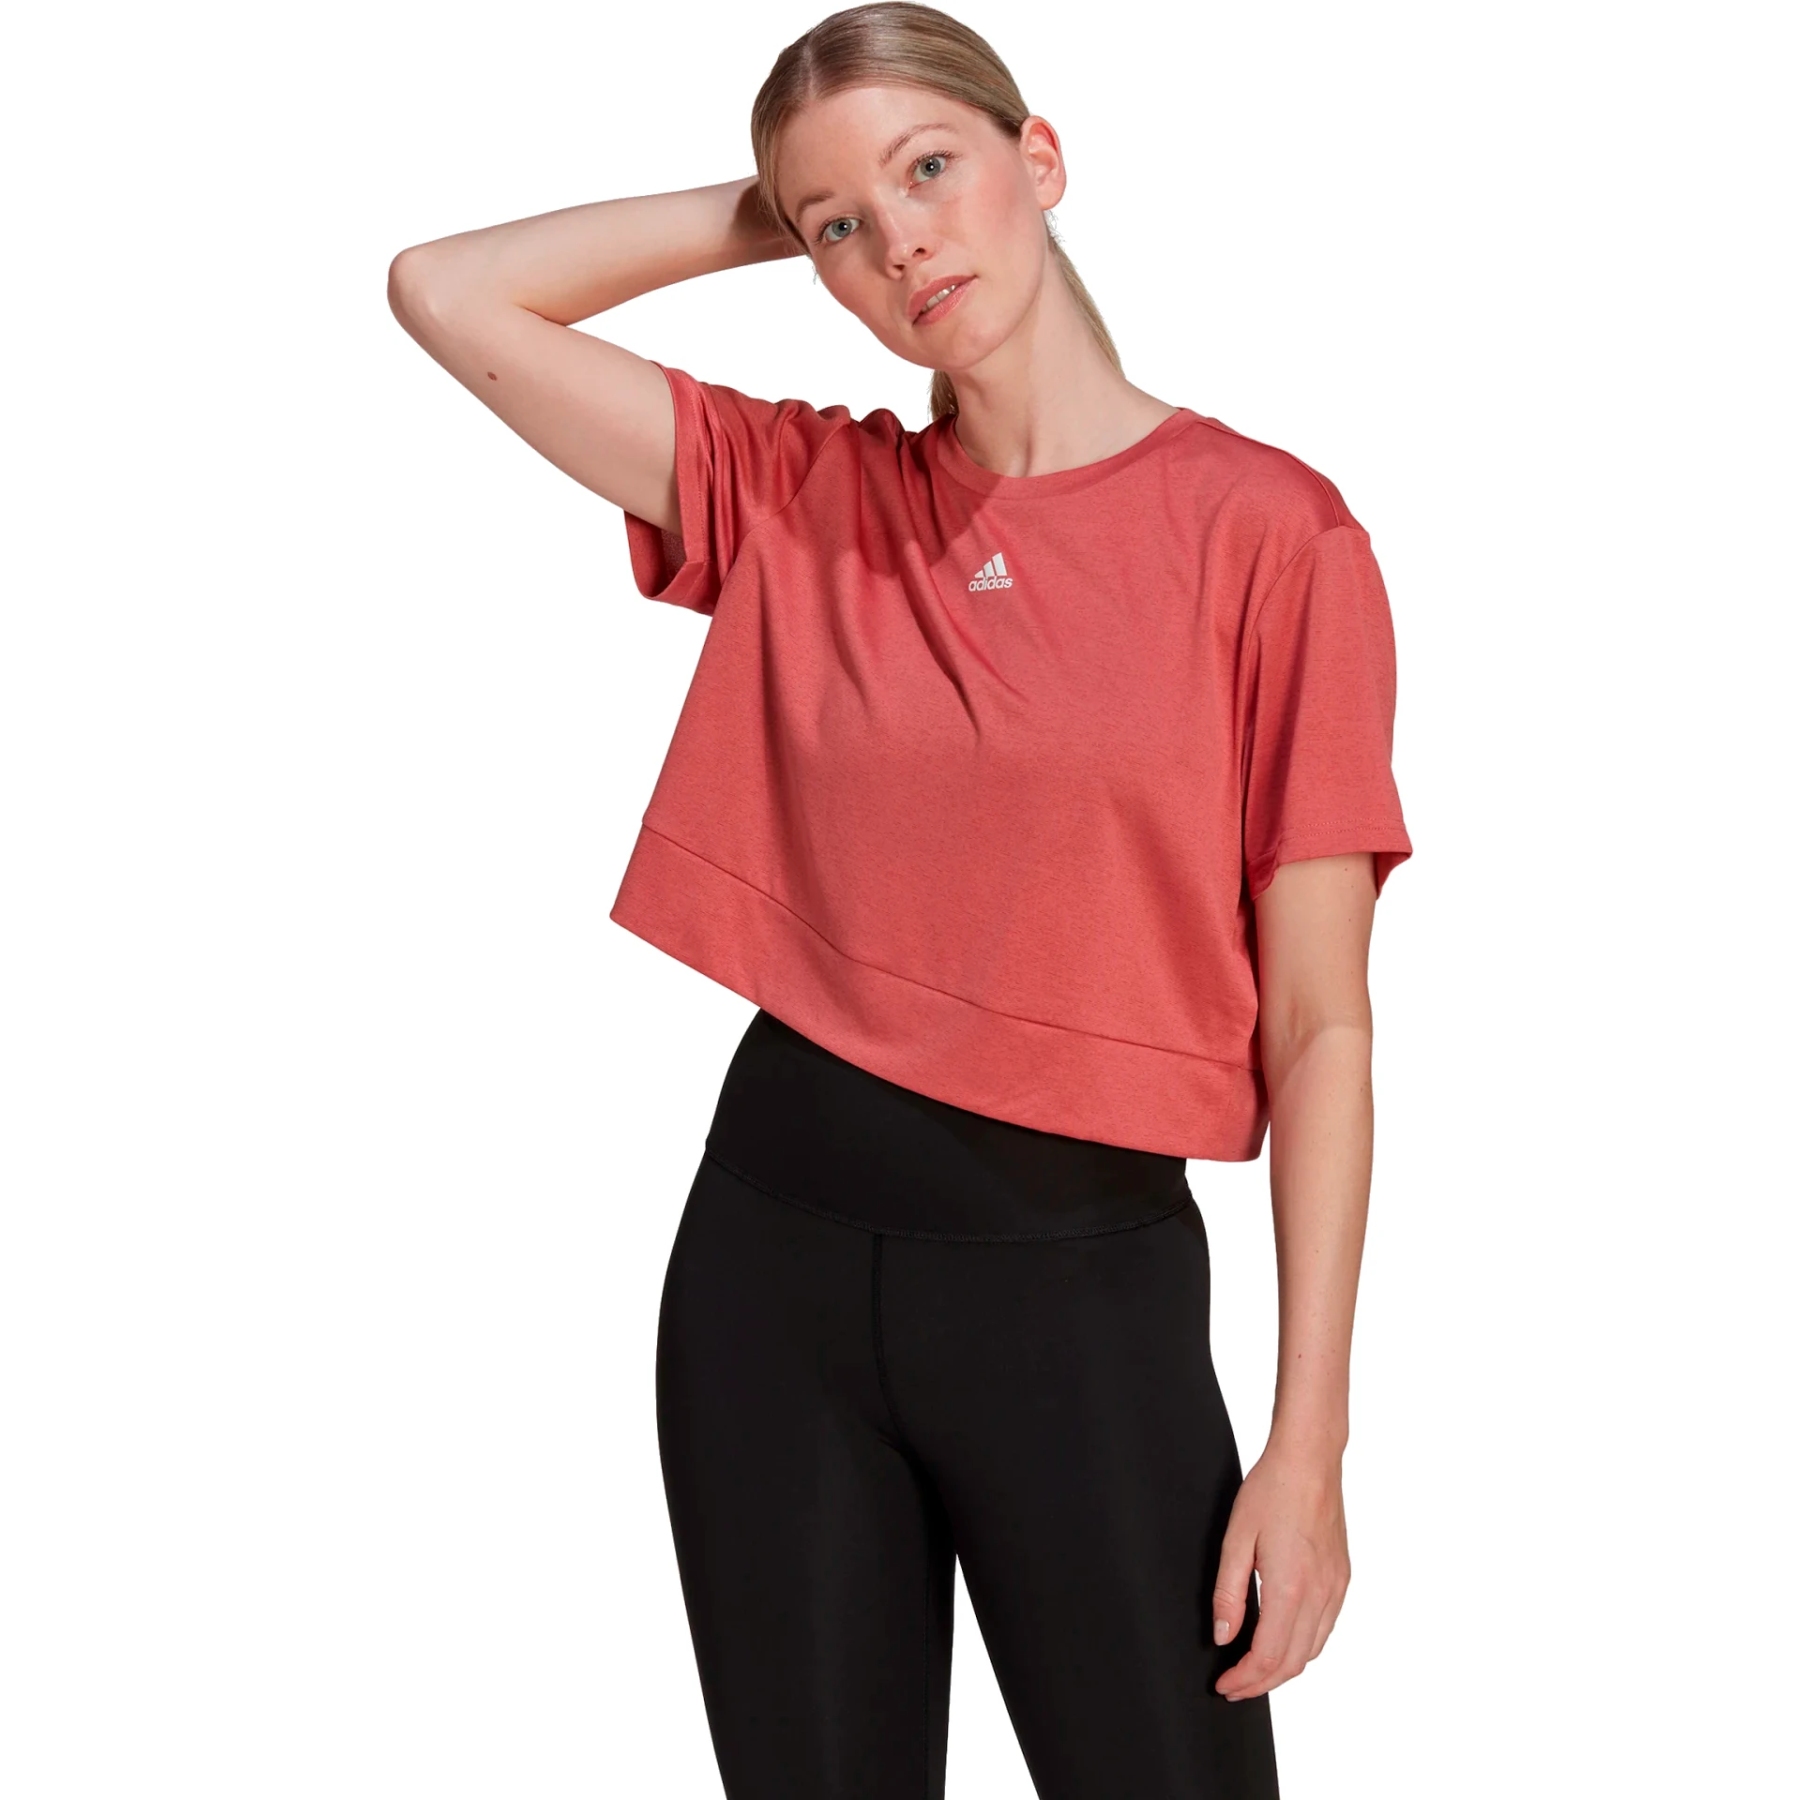 Produktbild von adidas AEROREADY Studio Loose Crop T-Shirt Damen - wonder red/white HM8721